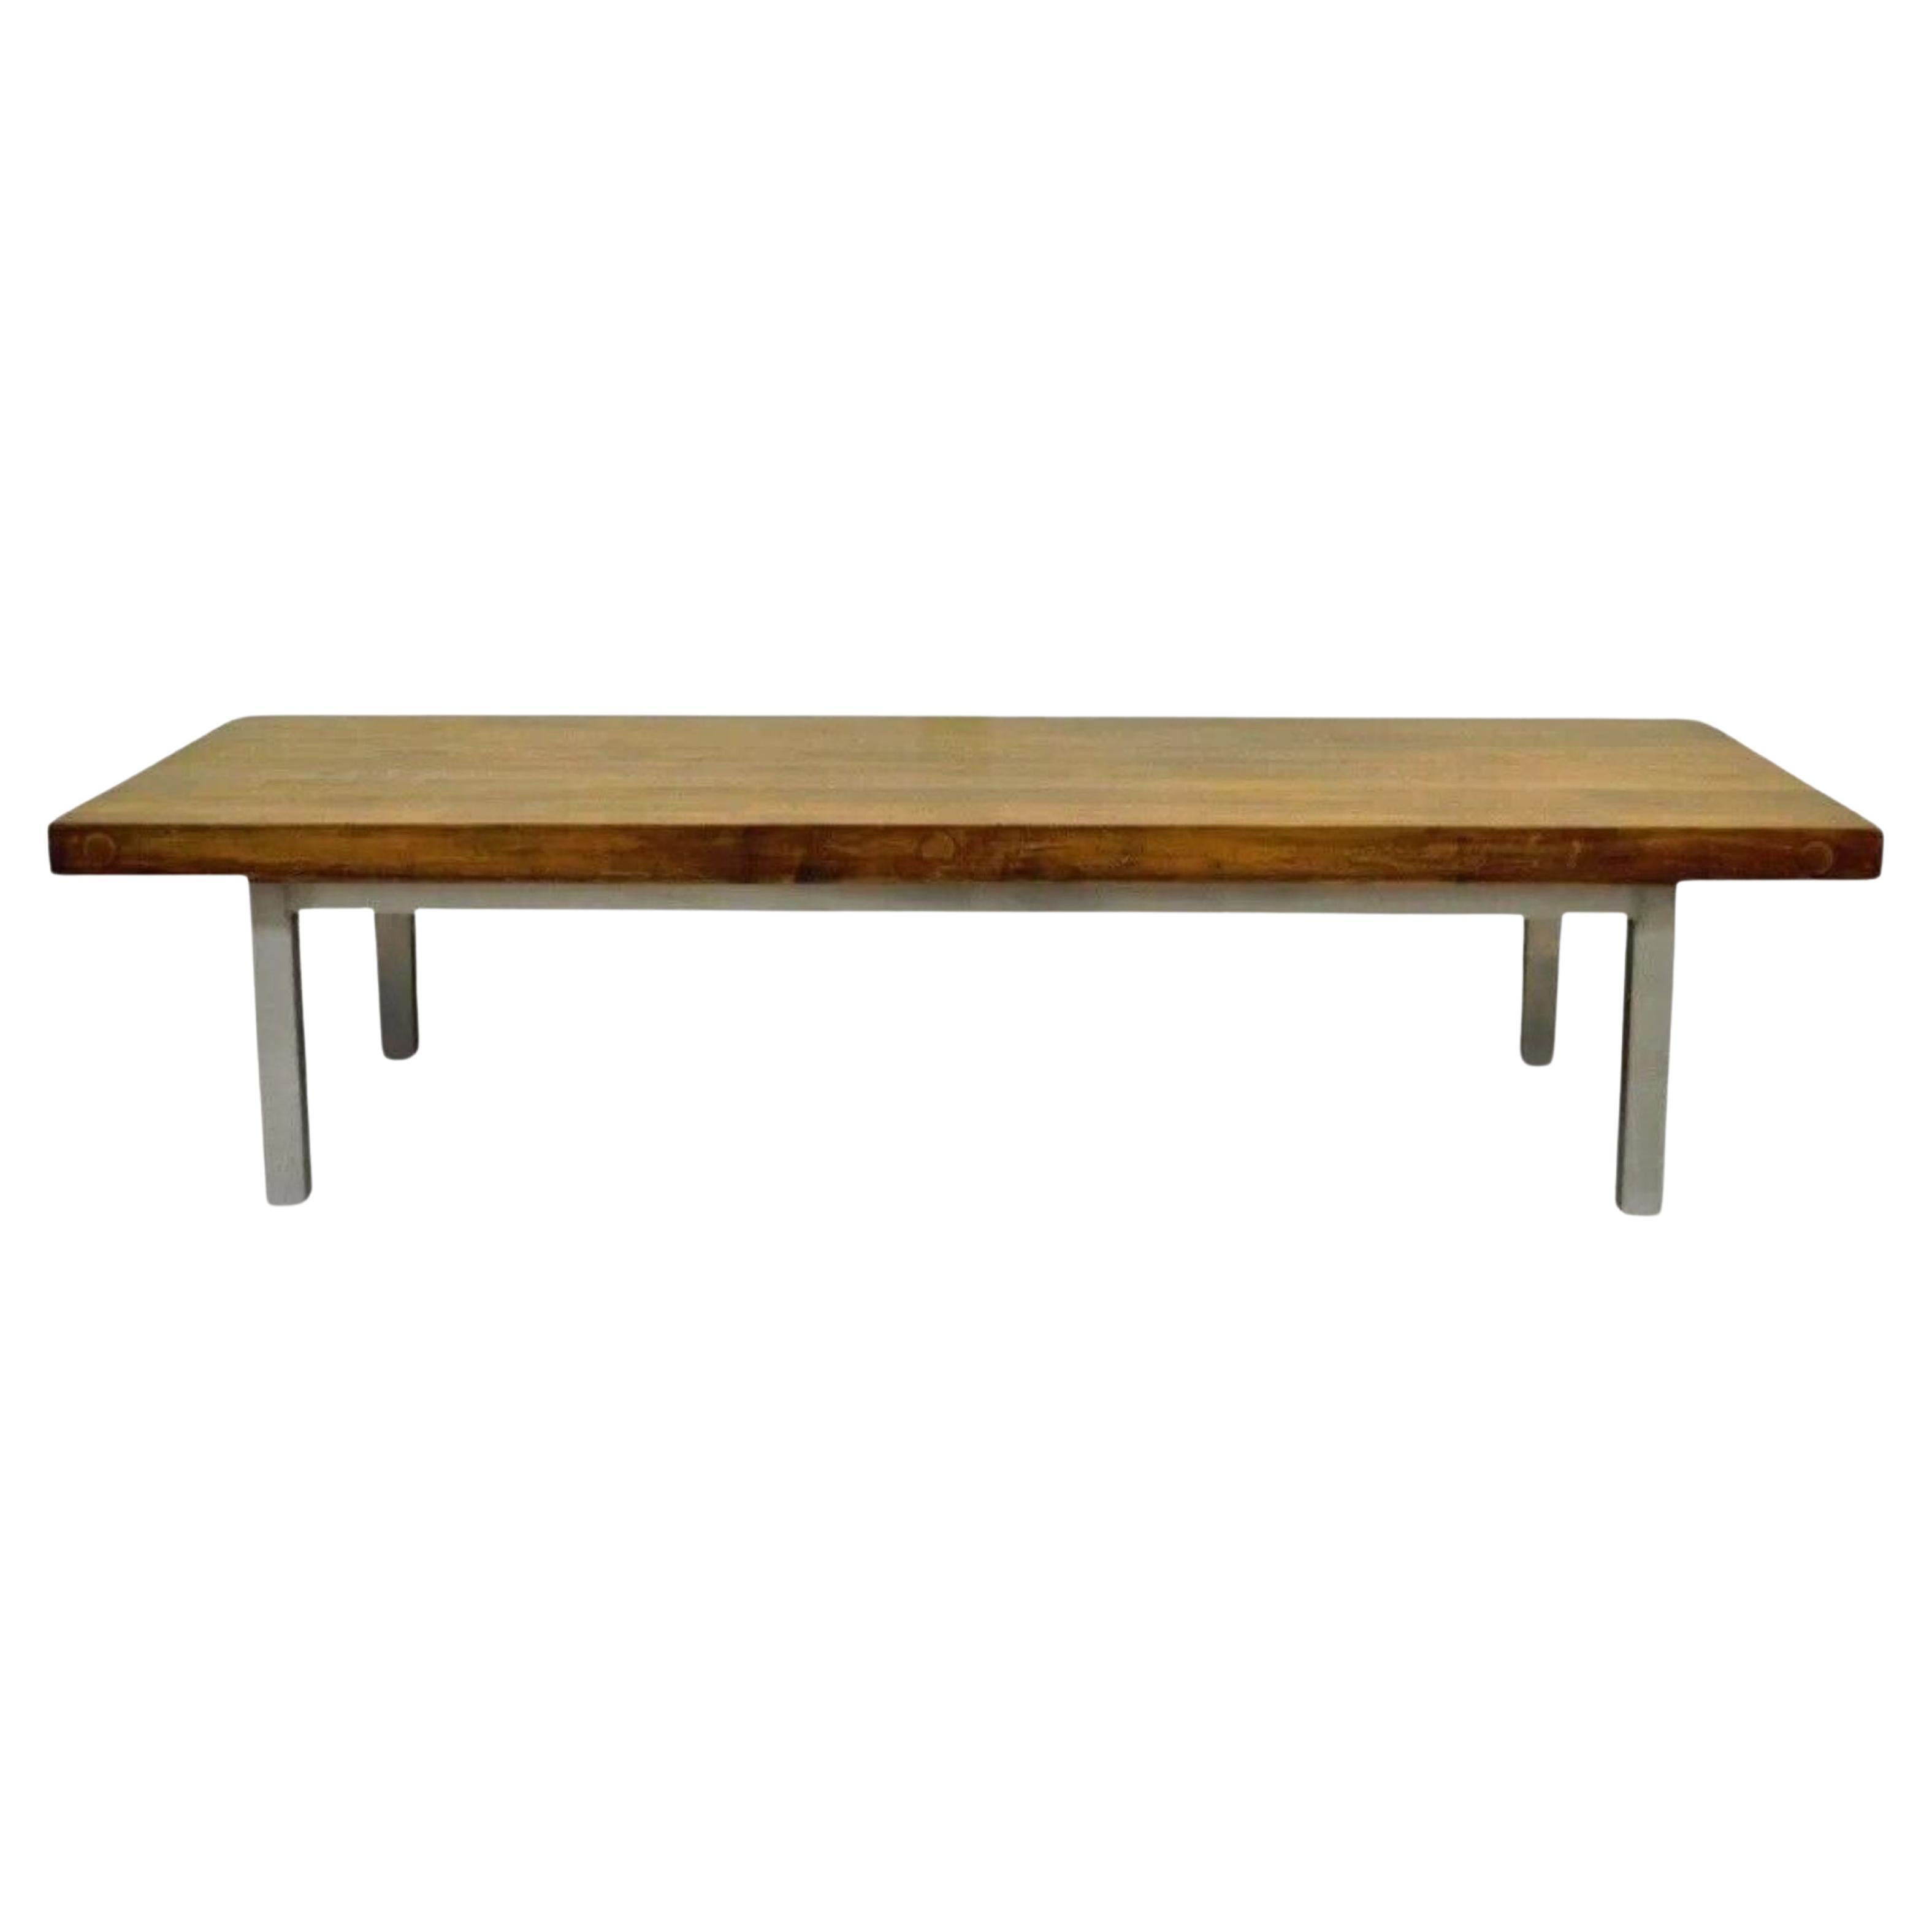 Table basse vintage, industrielle et moderne, avec base en aluminium et blocs de boucherie récupérés